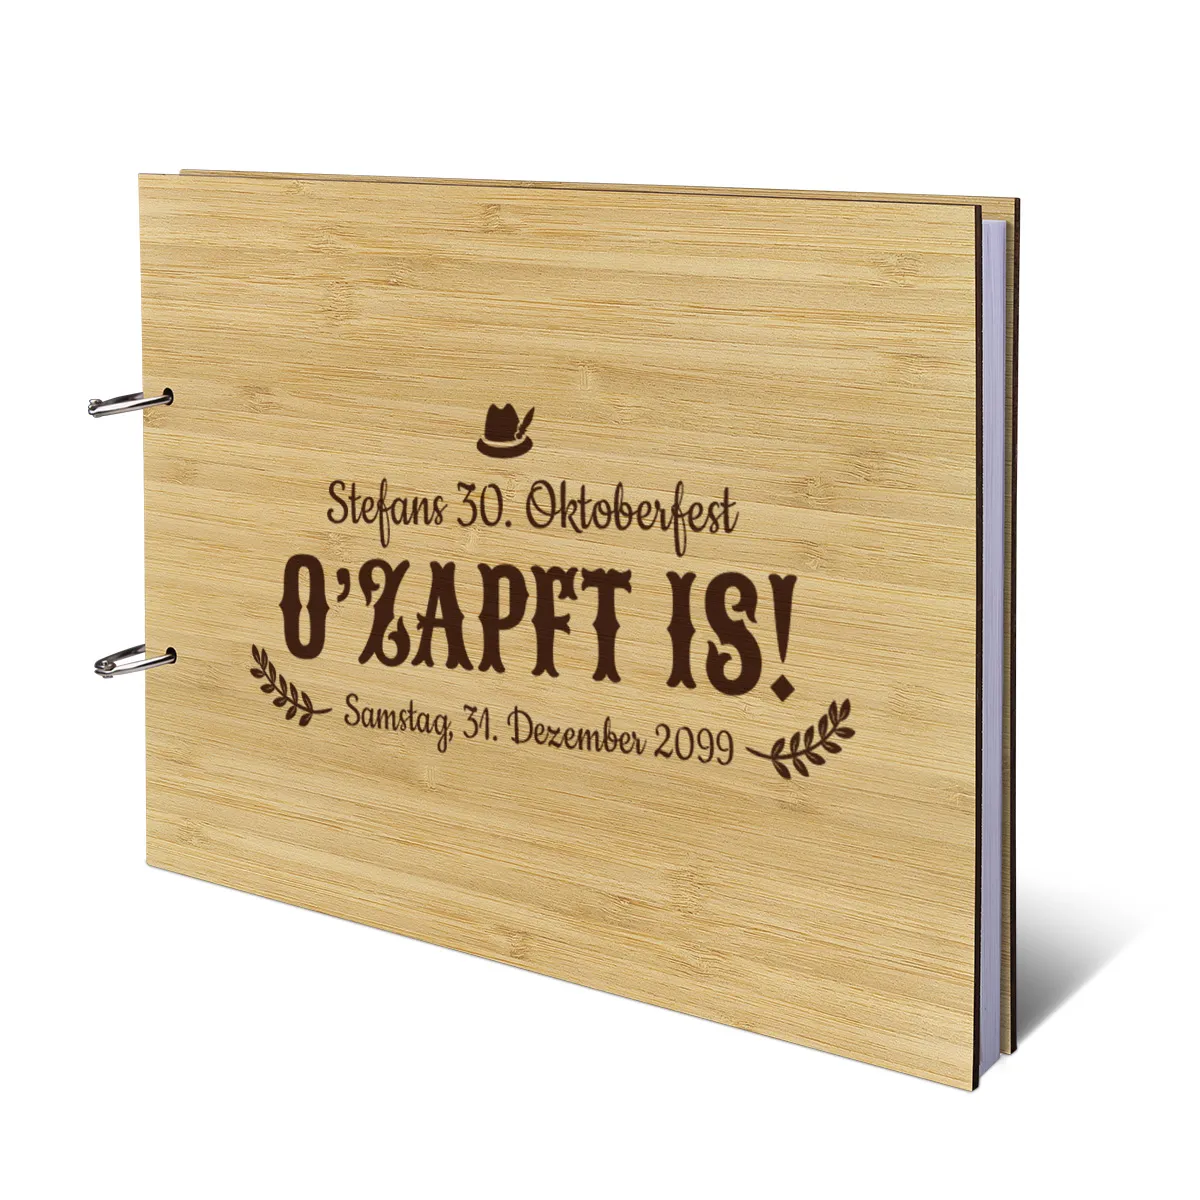 Personalisiertes Geburtstag Gästebuch A4 - Ozapft is